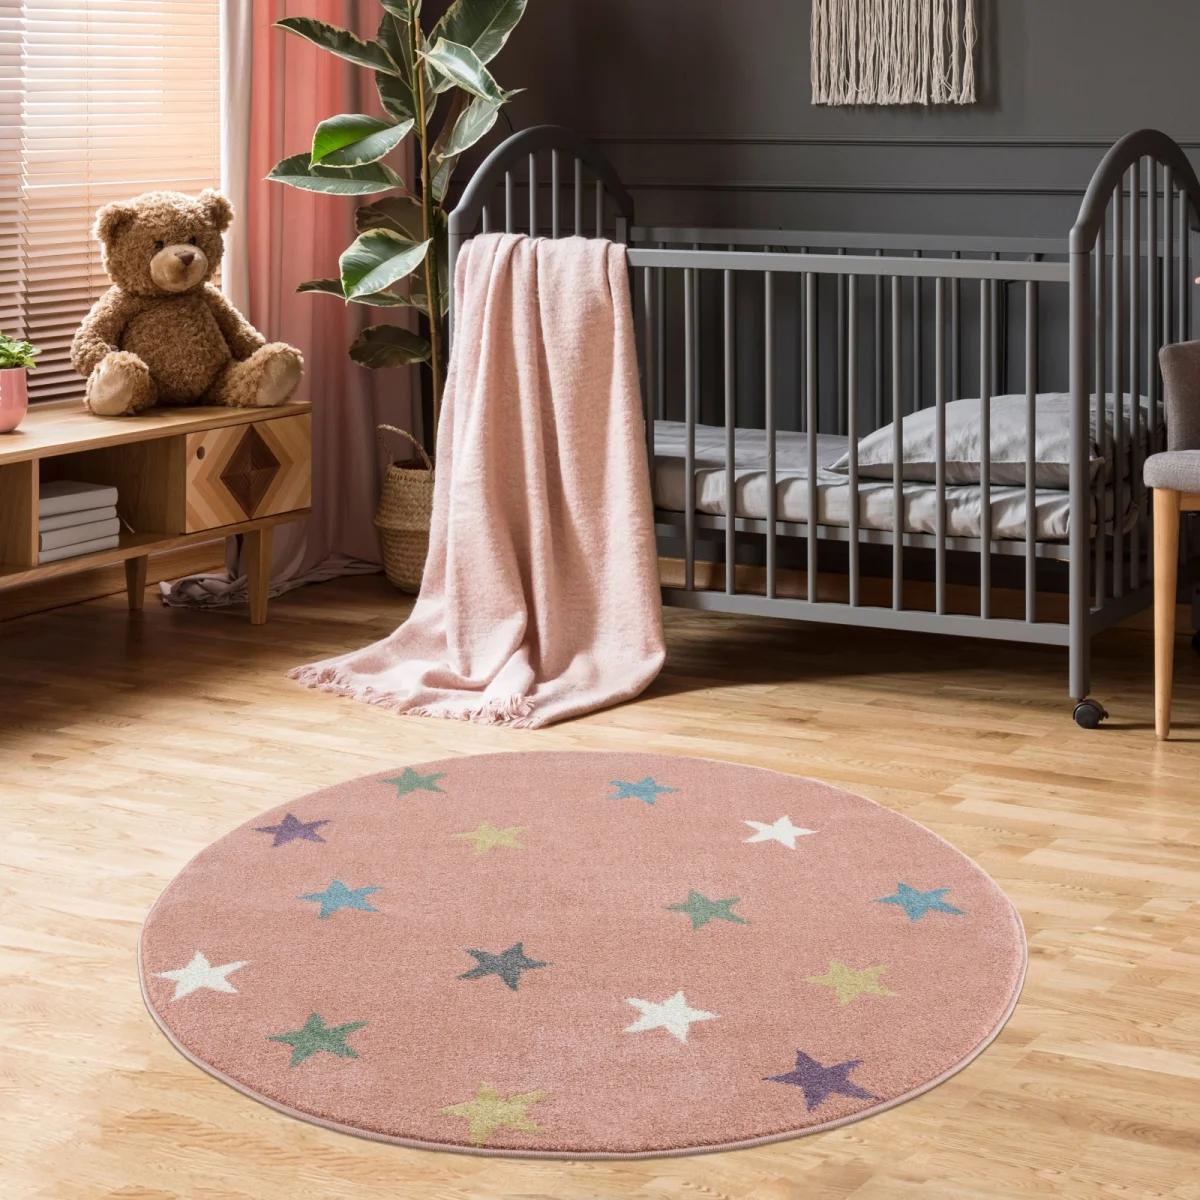 Dywan dziecięcy okrągły Pink Stars Round 160 cm do pokoju dziecięcego różowy w gwiazdki nr. 1